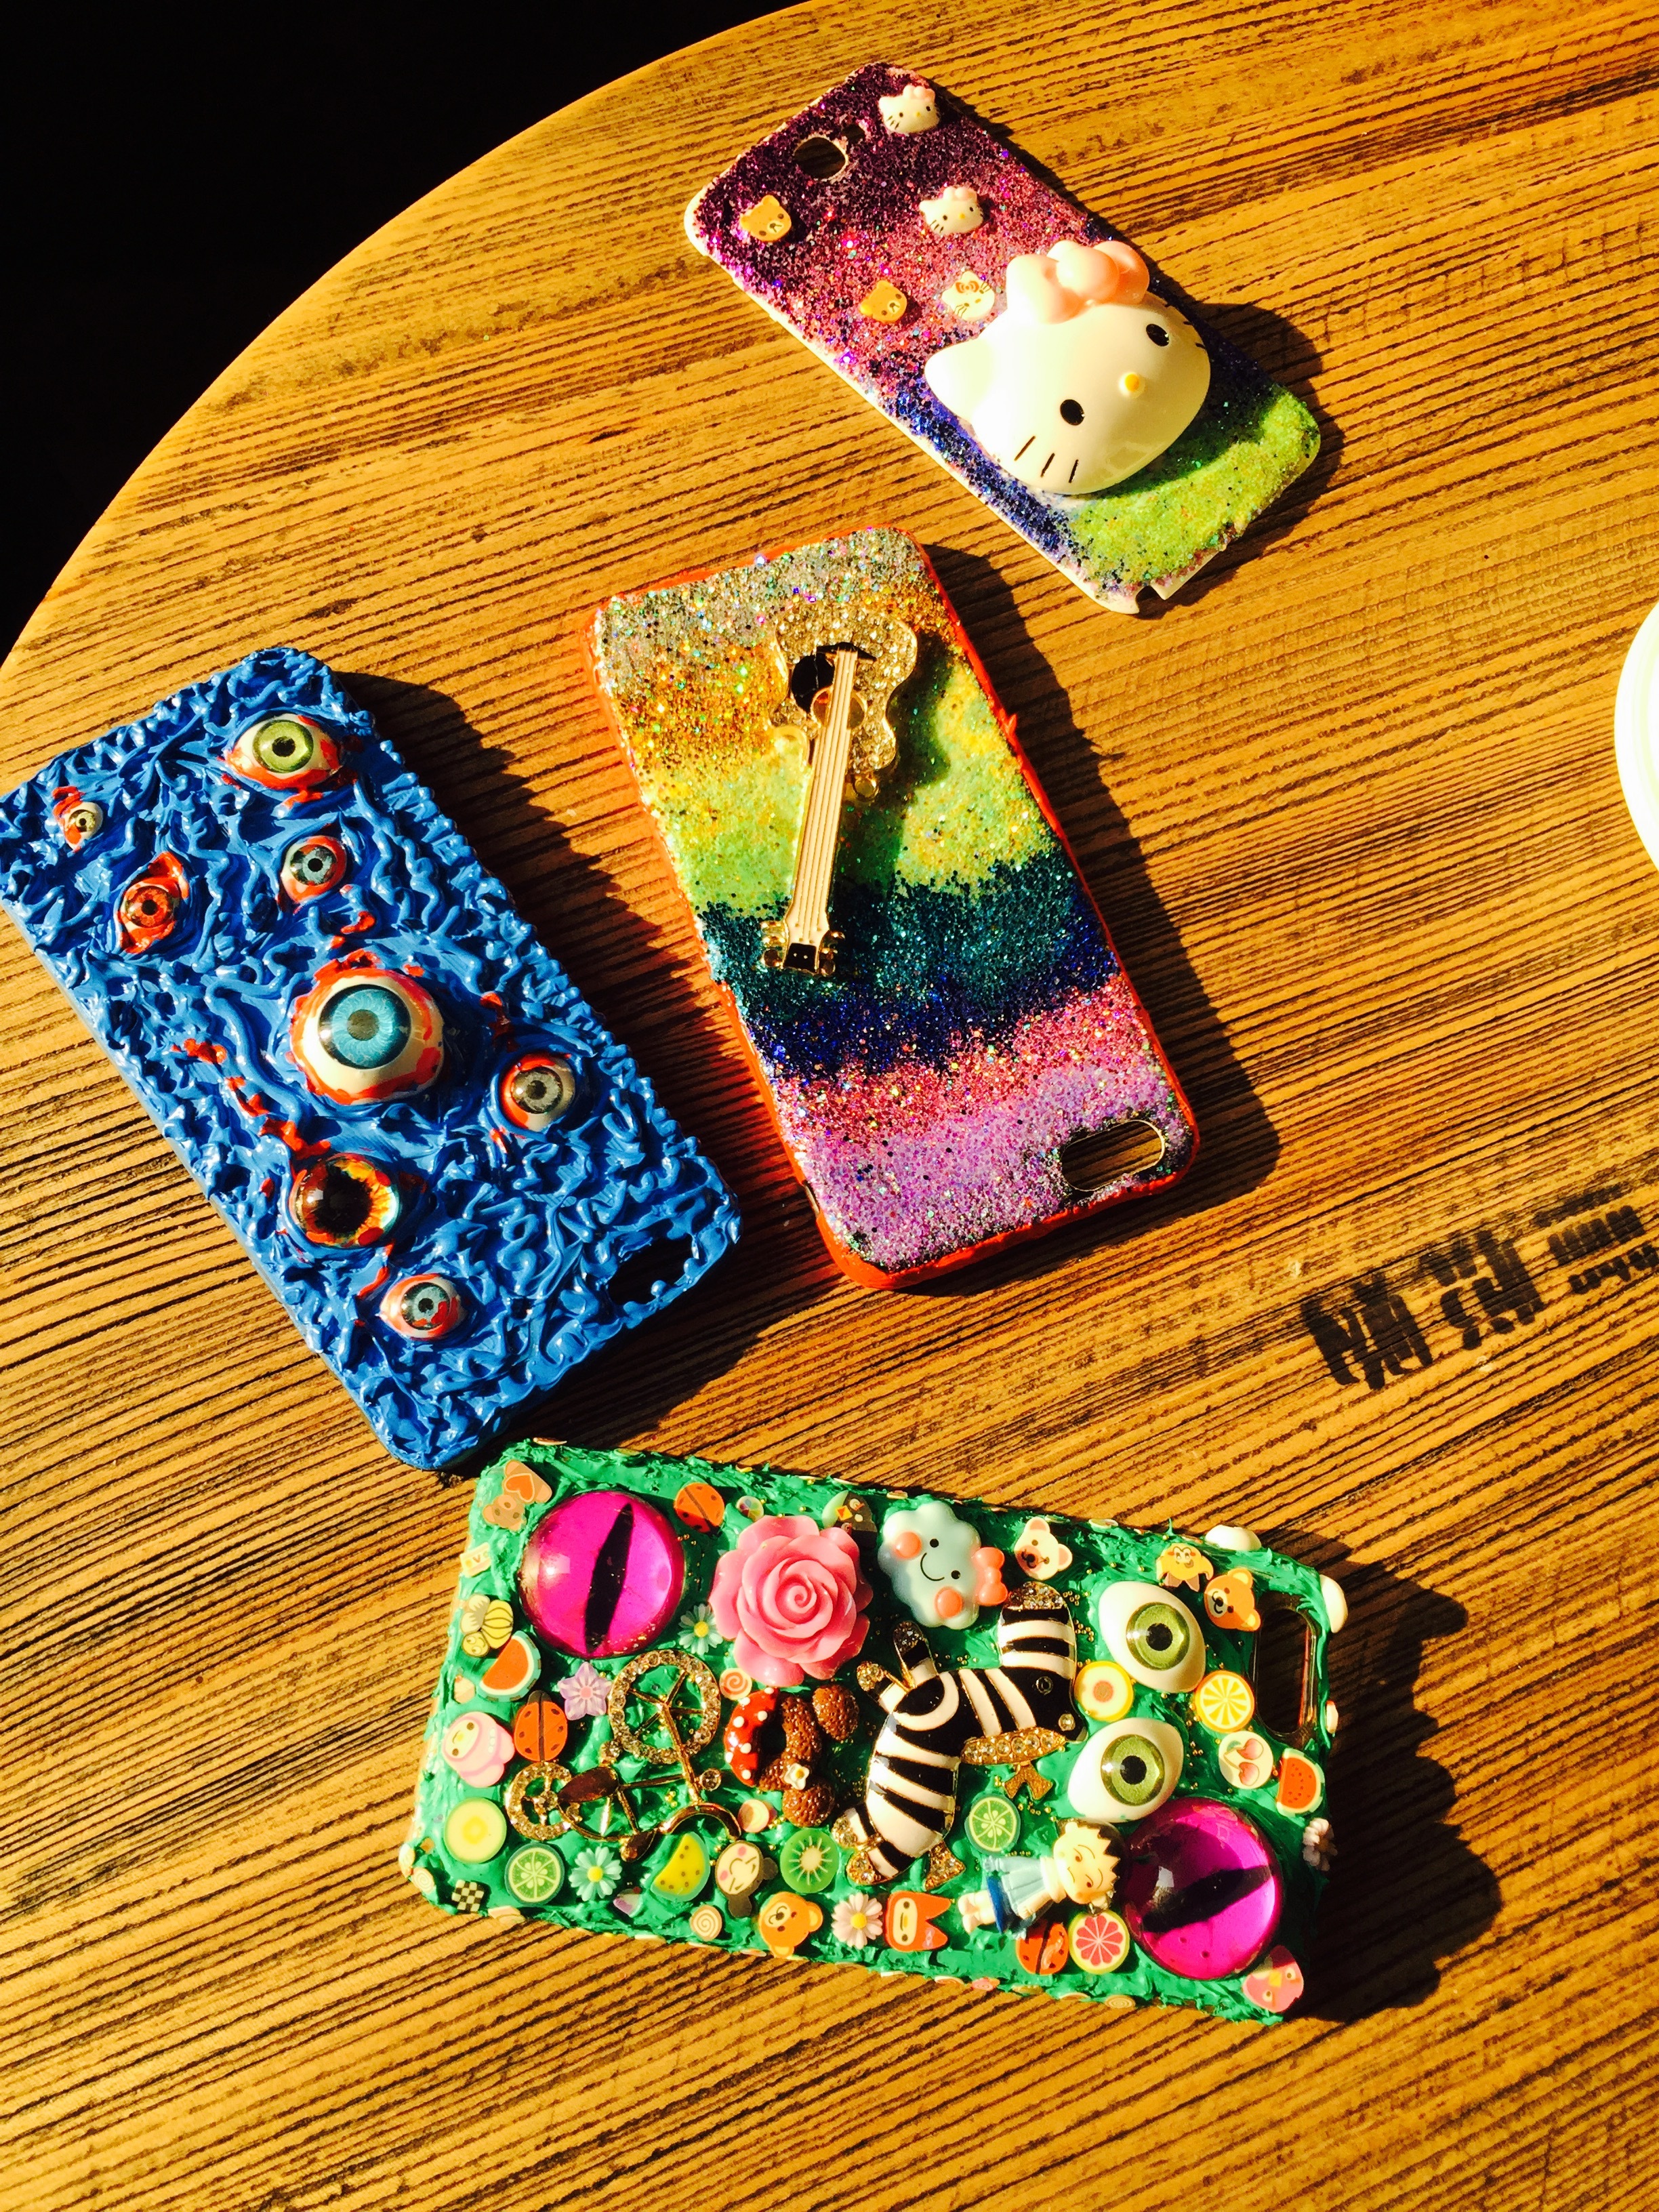 创意新款磨砂手机壳 彩色手机壳素材糖果色磨砂手机壳tpu手机套-阿里巴巴